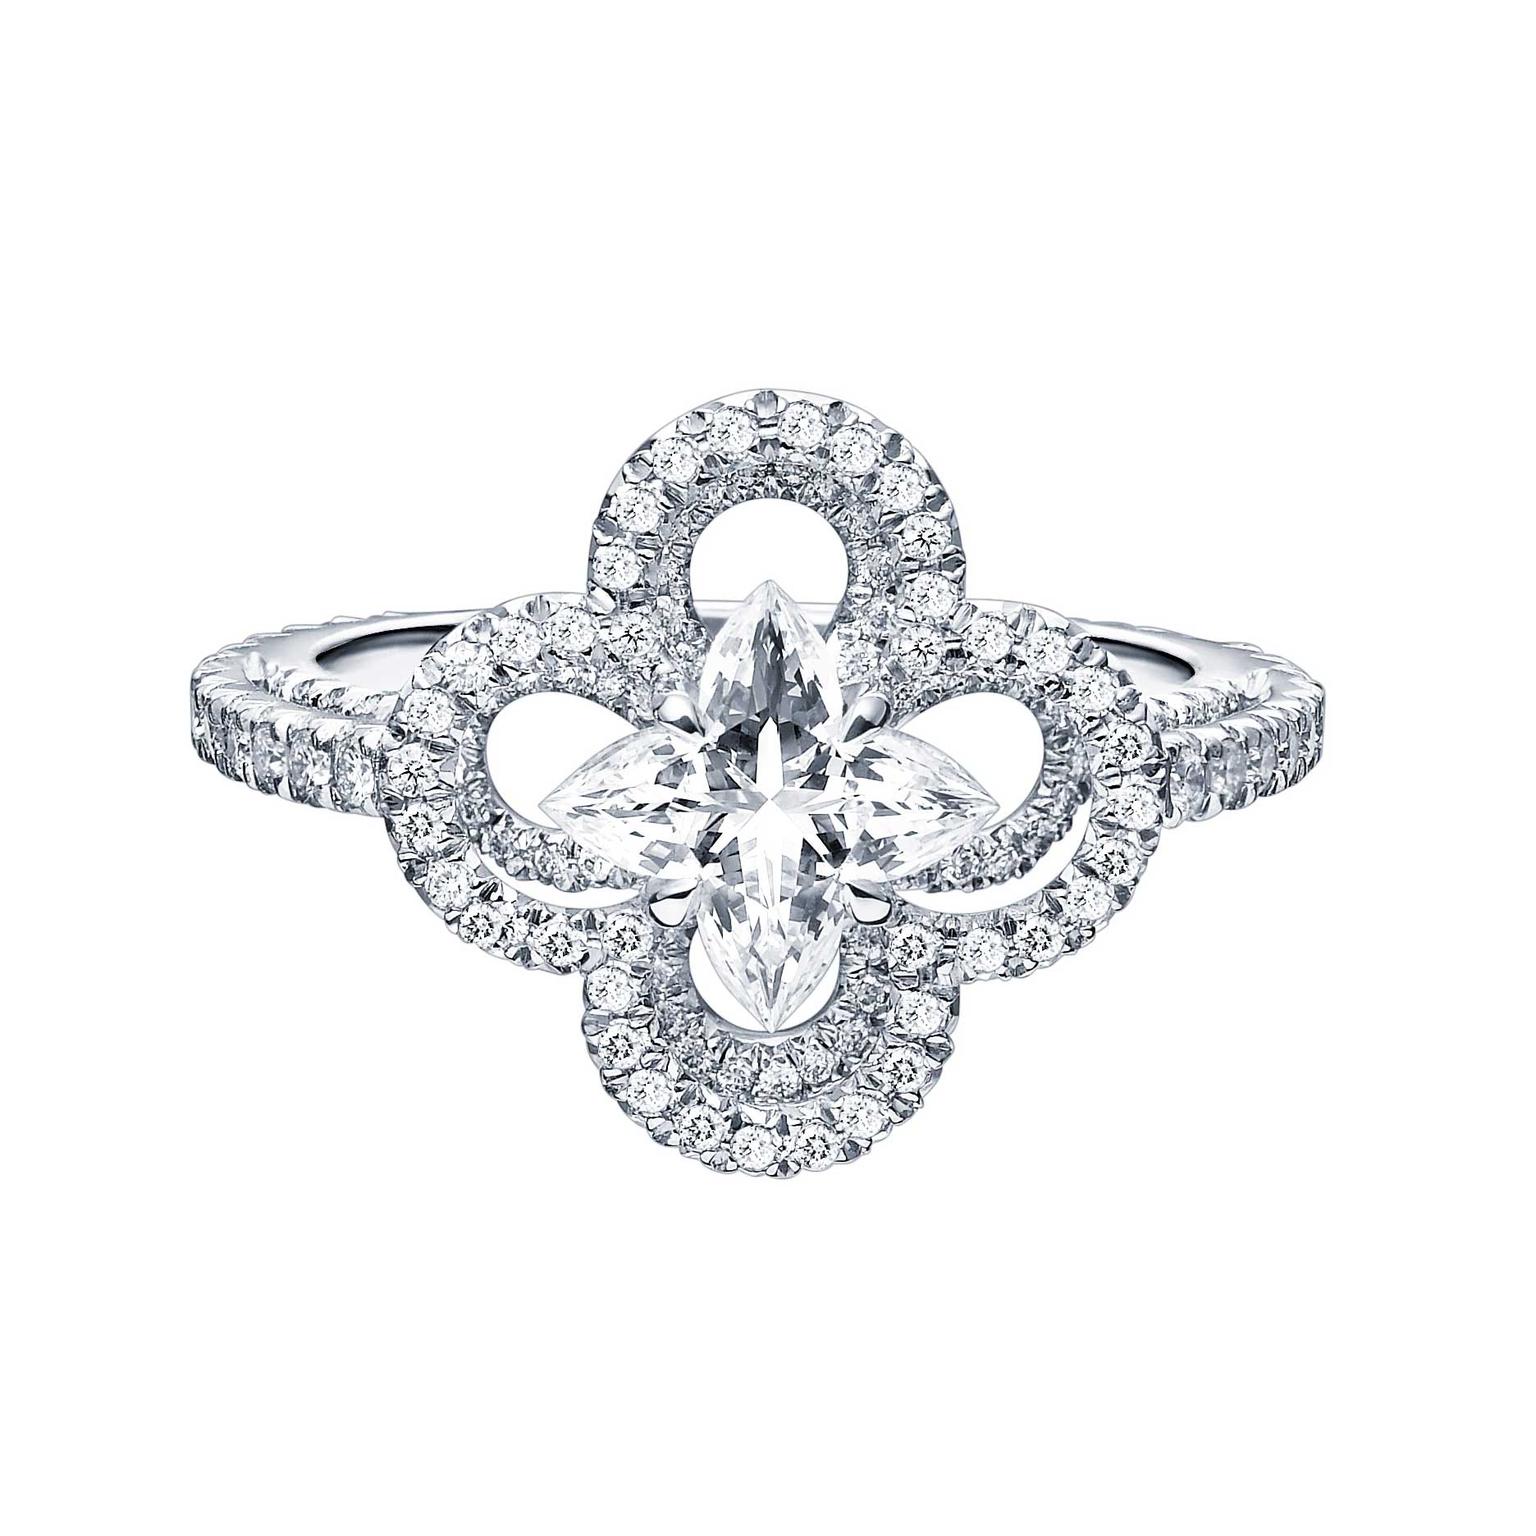 Monogram Fusion Platinum and Diamond Engagement Ring - 